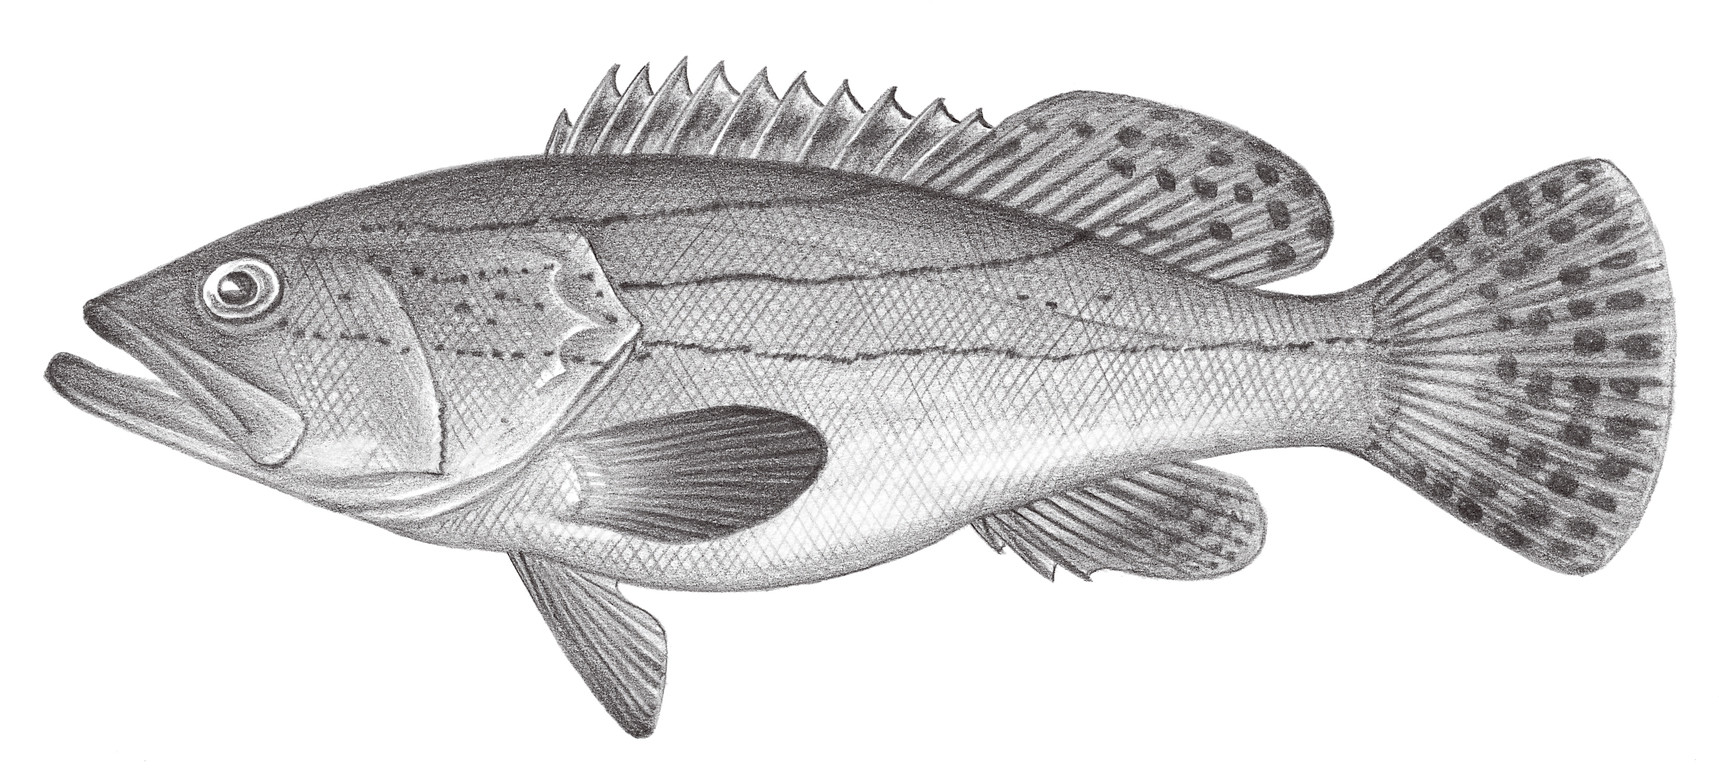 1031.	寬帶石斑魚 Epinephelus latifasciatus (Temminck & Schlegel, 1842)